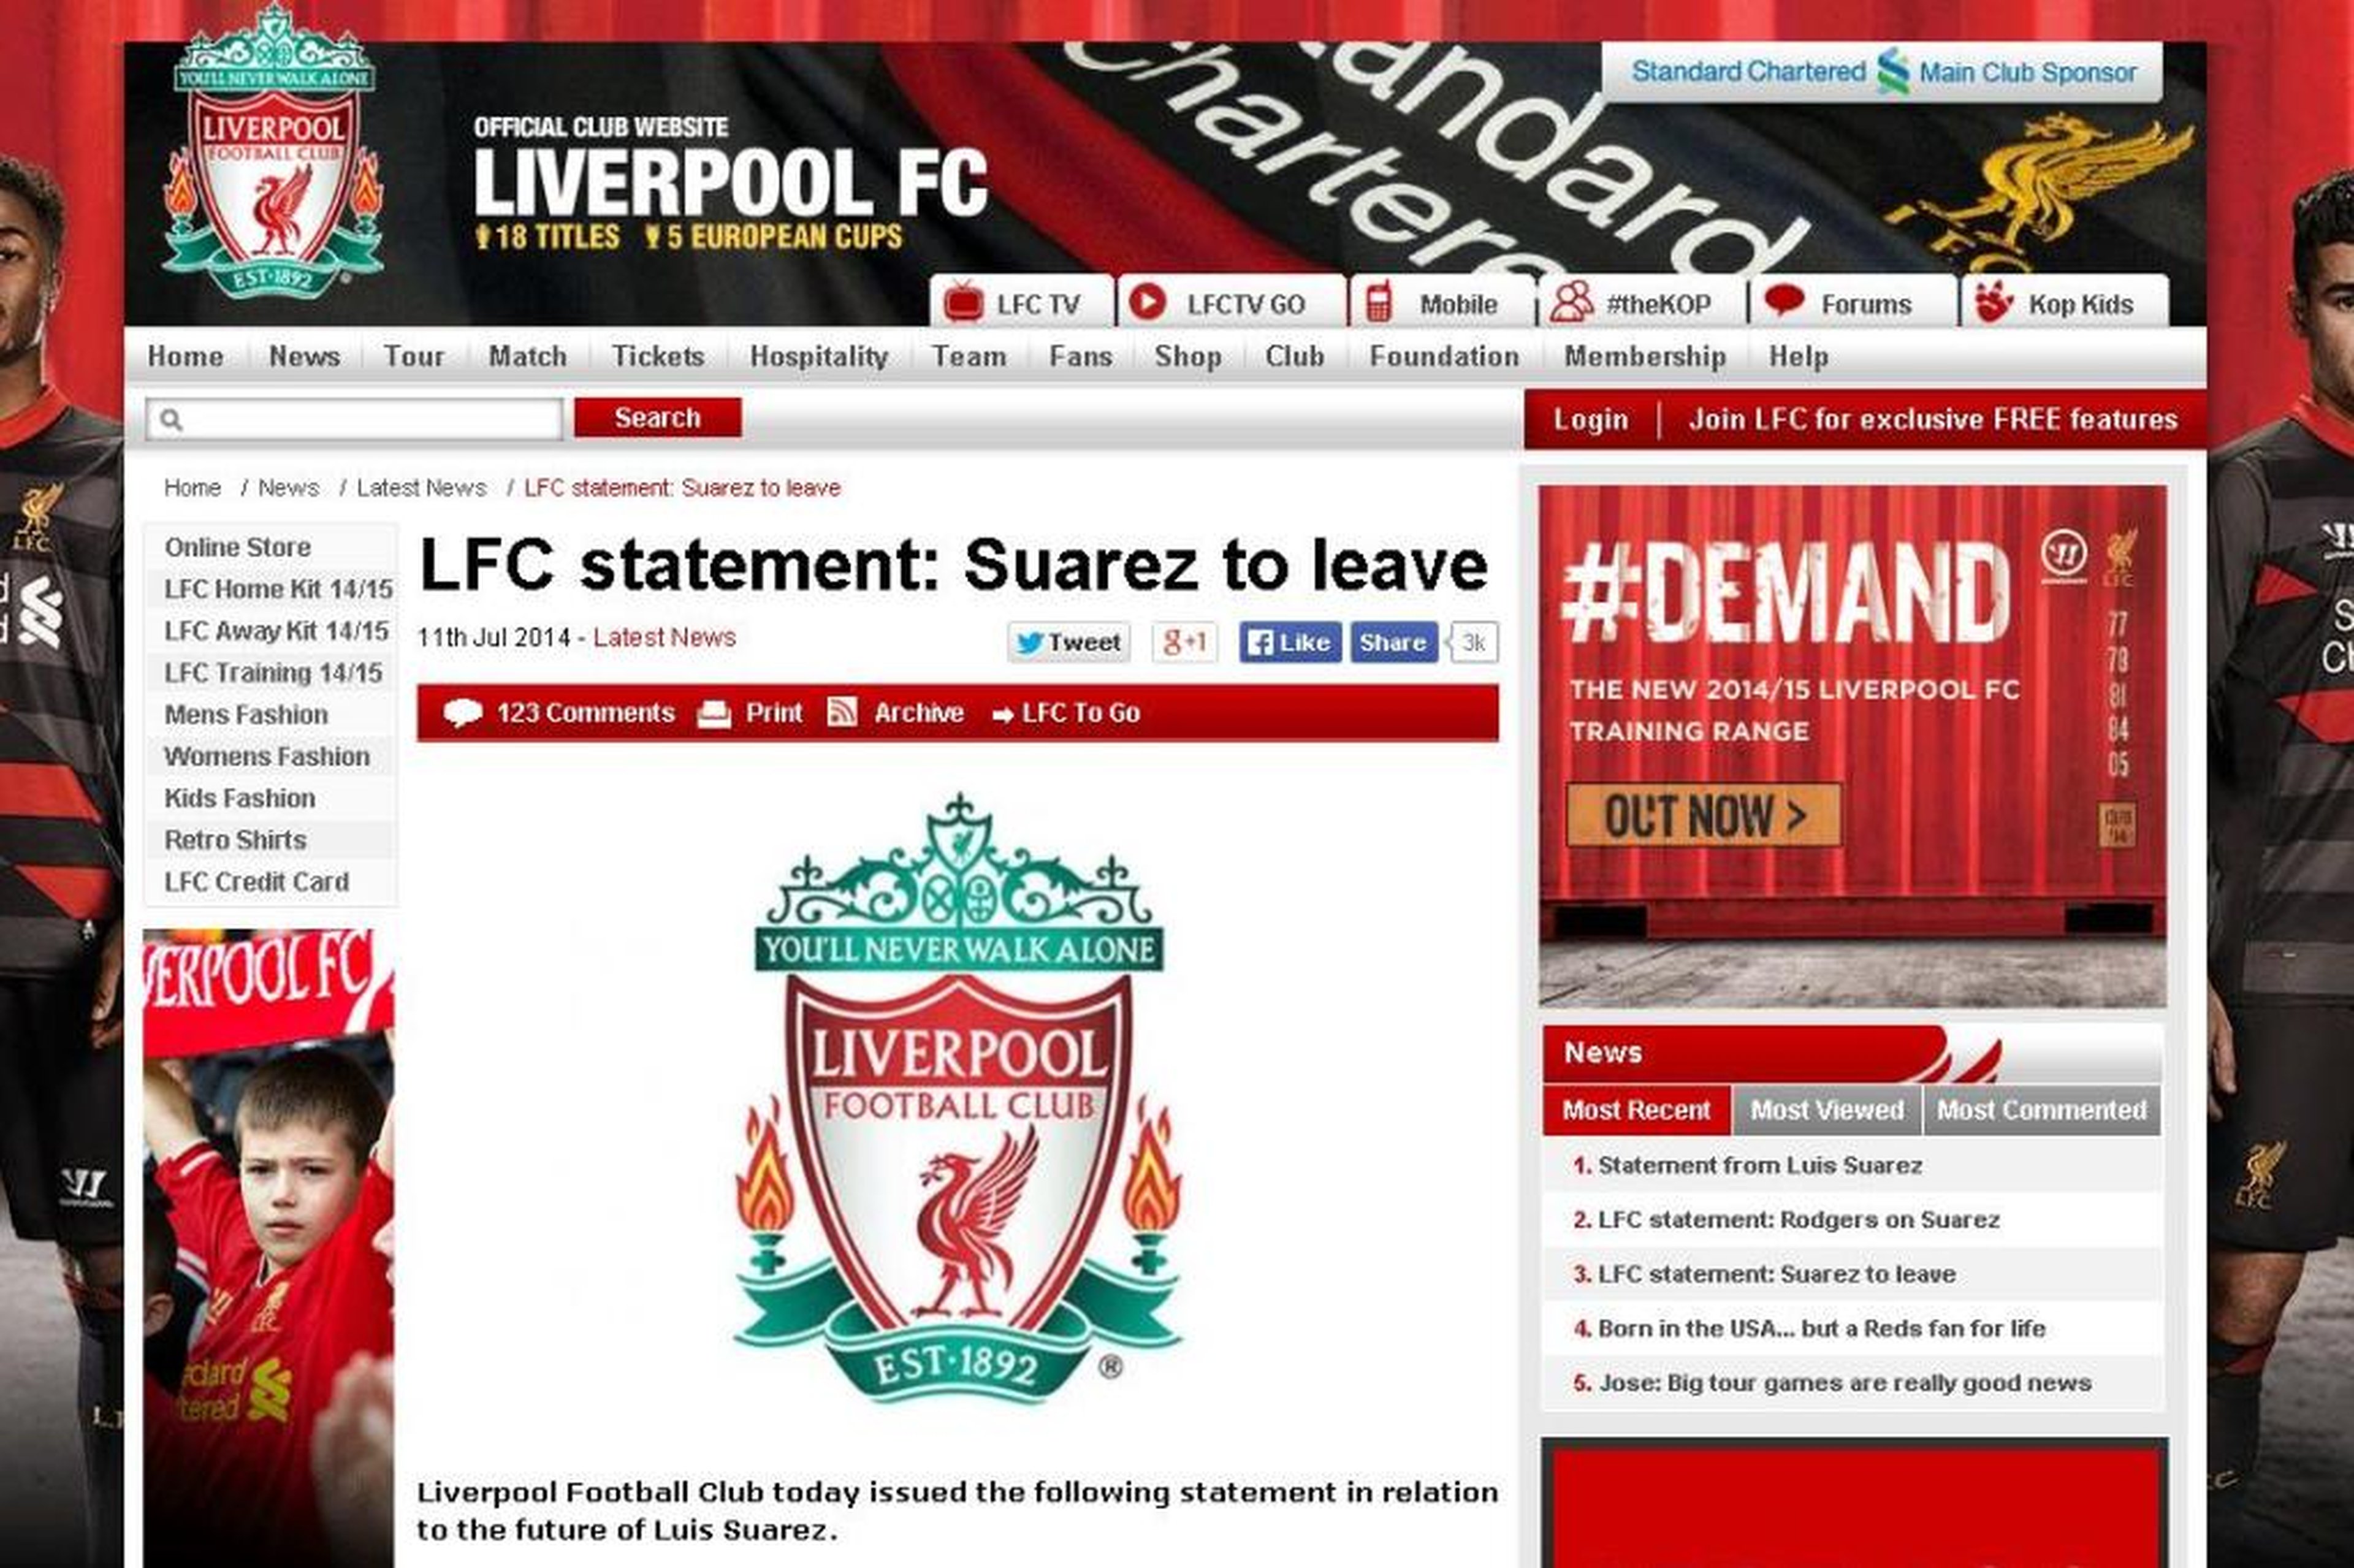 Reprodução/LiverpoolFC.com